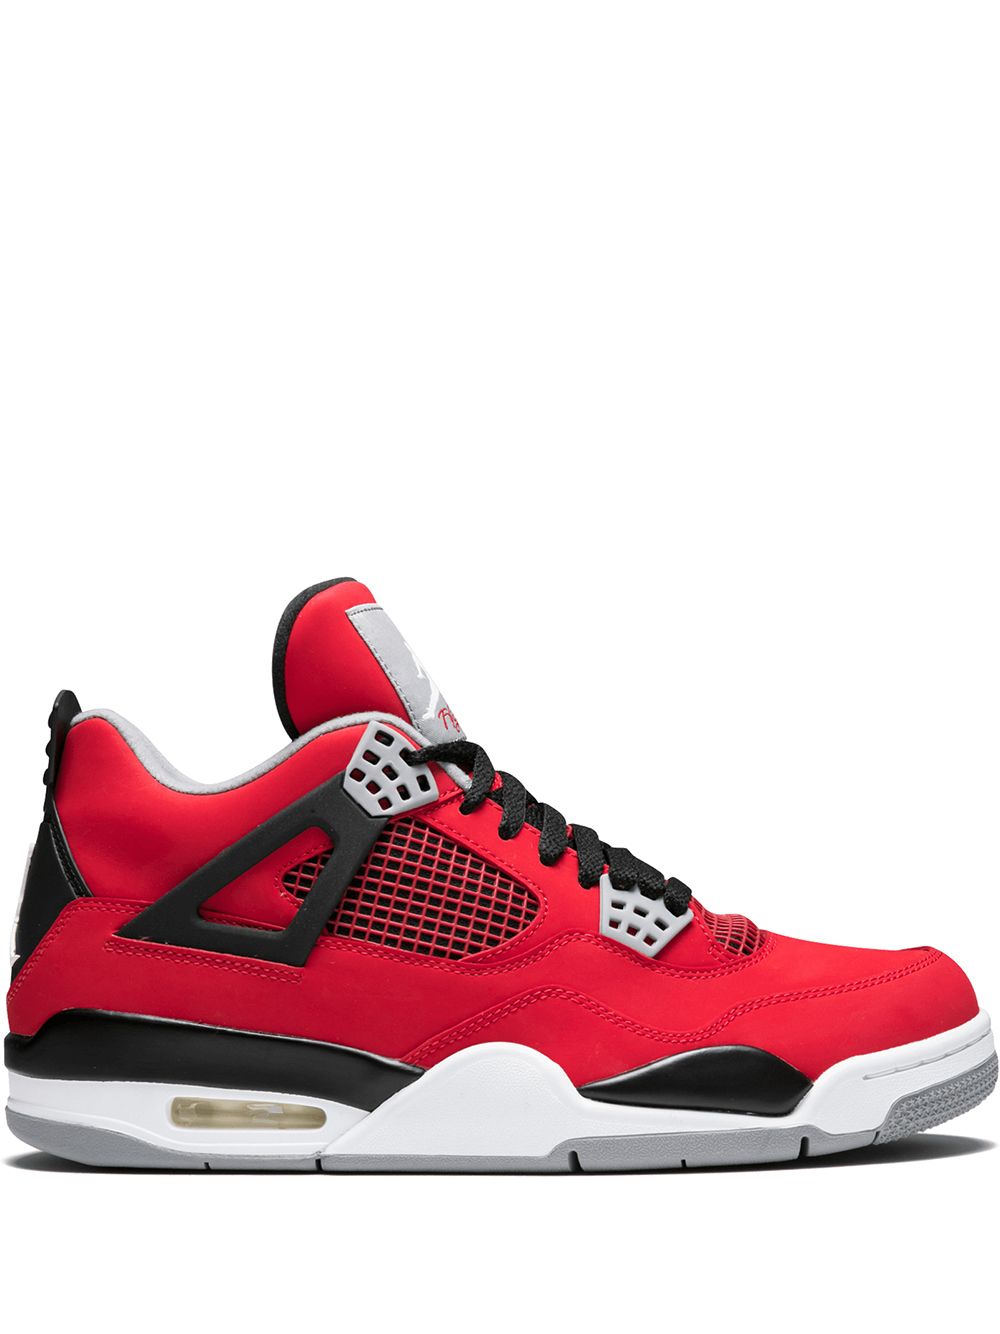 Jordan Air Jordan 4 Retro "Toro Bravo" sneakers - Red